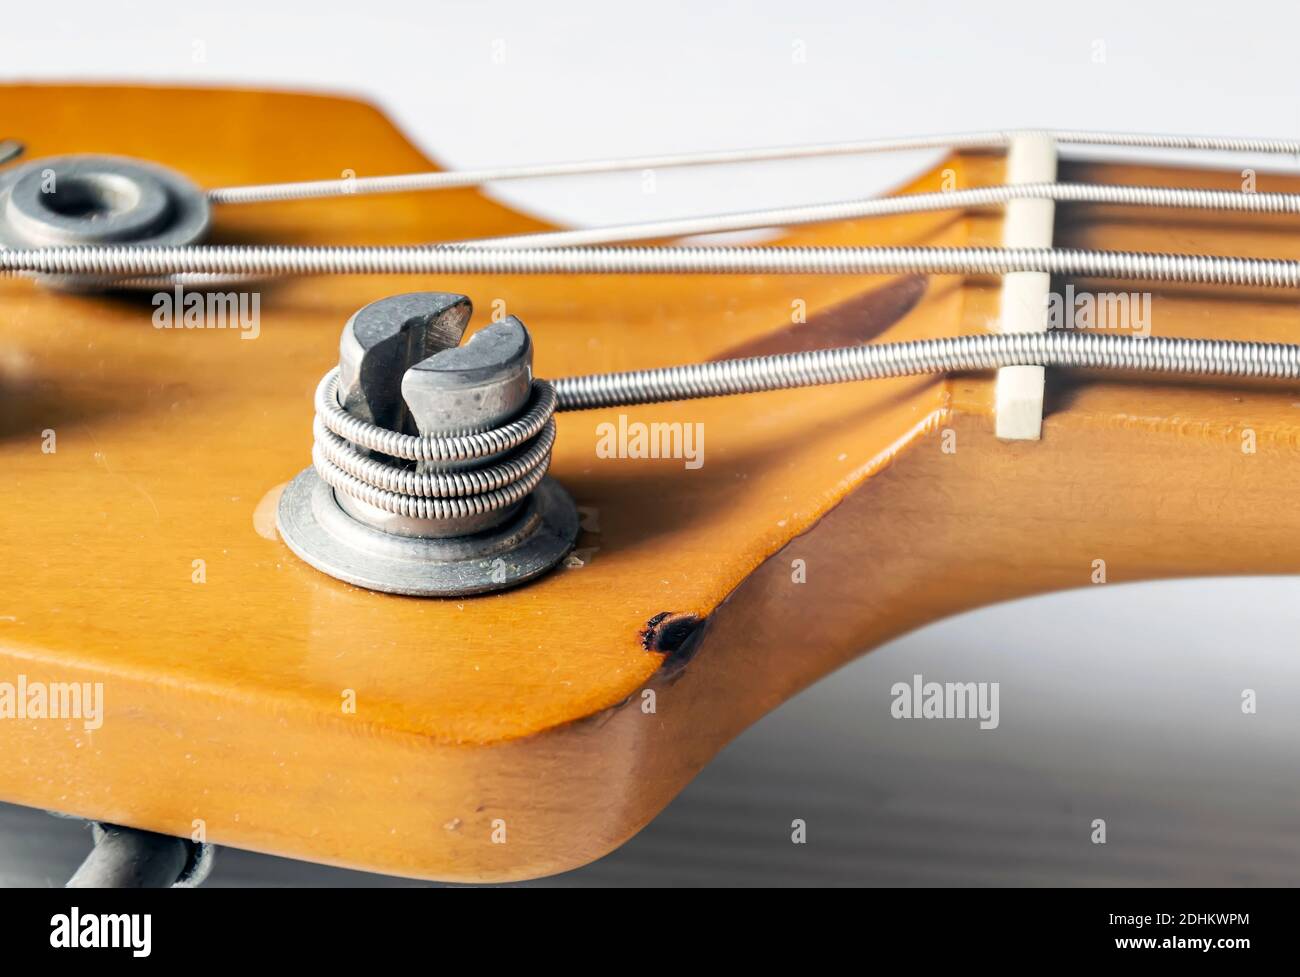 Detail eines Stimmpfostens auf dem hölzernen Kopfteil einer E-Bass-Gitarre.  Musikinstrumente und Mechanik für Saitenstimmung Stockfotografie - Alamy